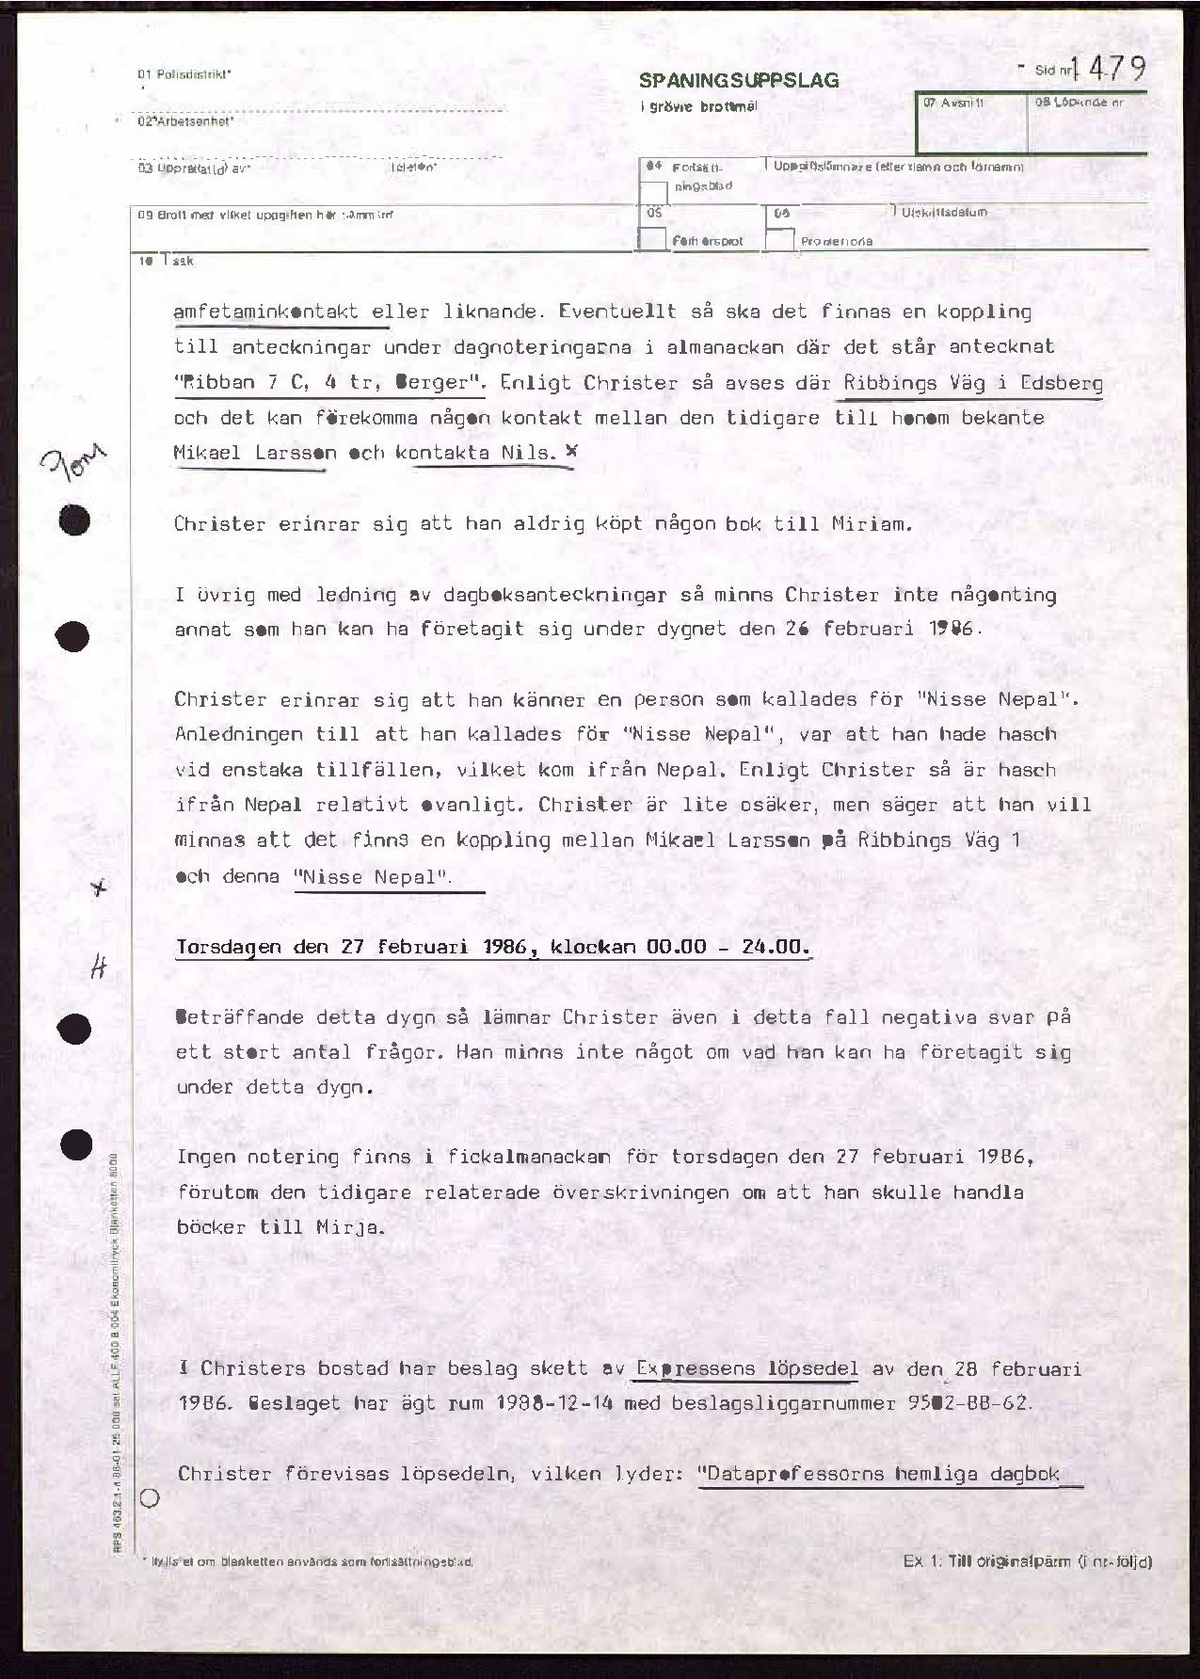 Pol-1989-01-20 KD10405-14 Förhör Christer Pettersson om dagbok.pdf